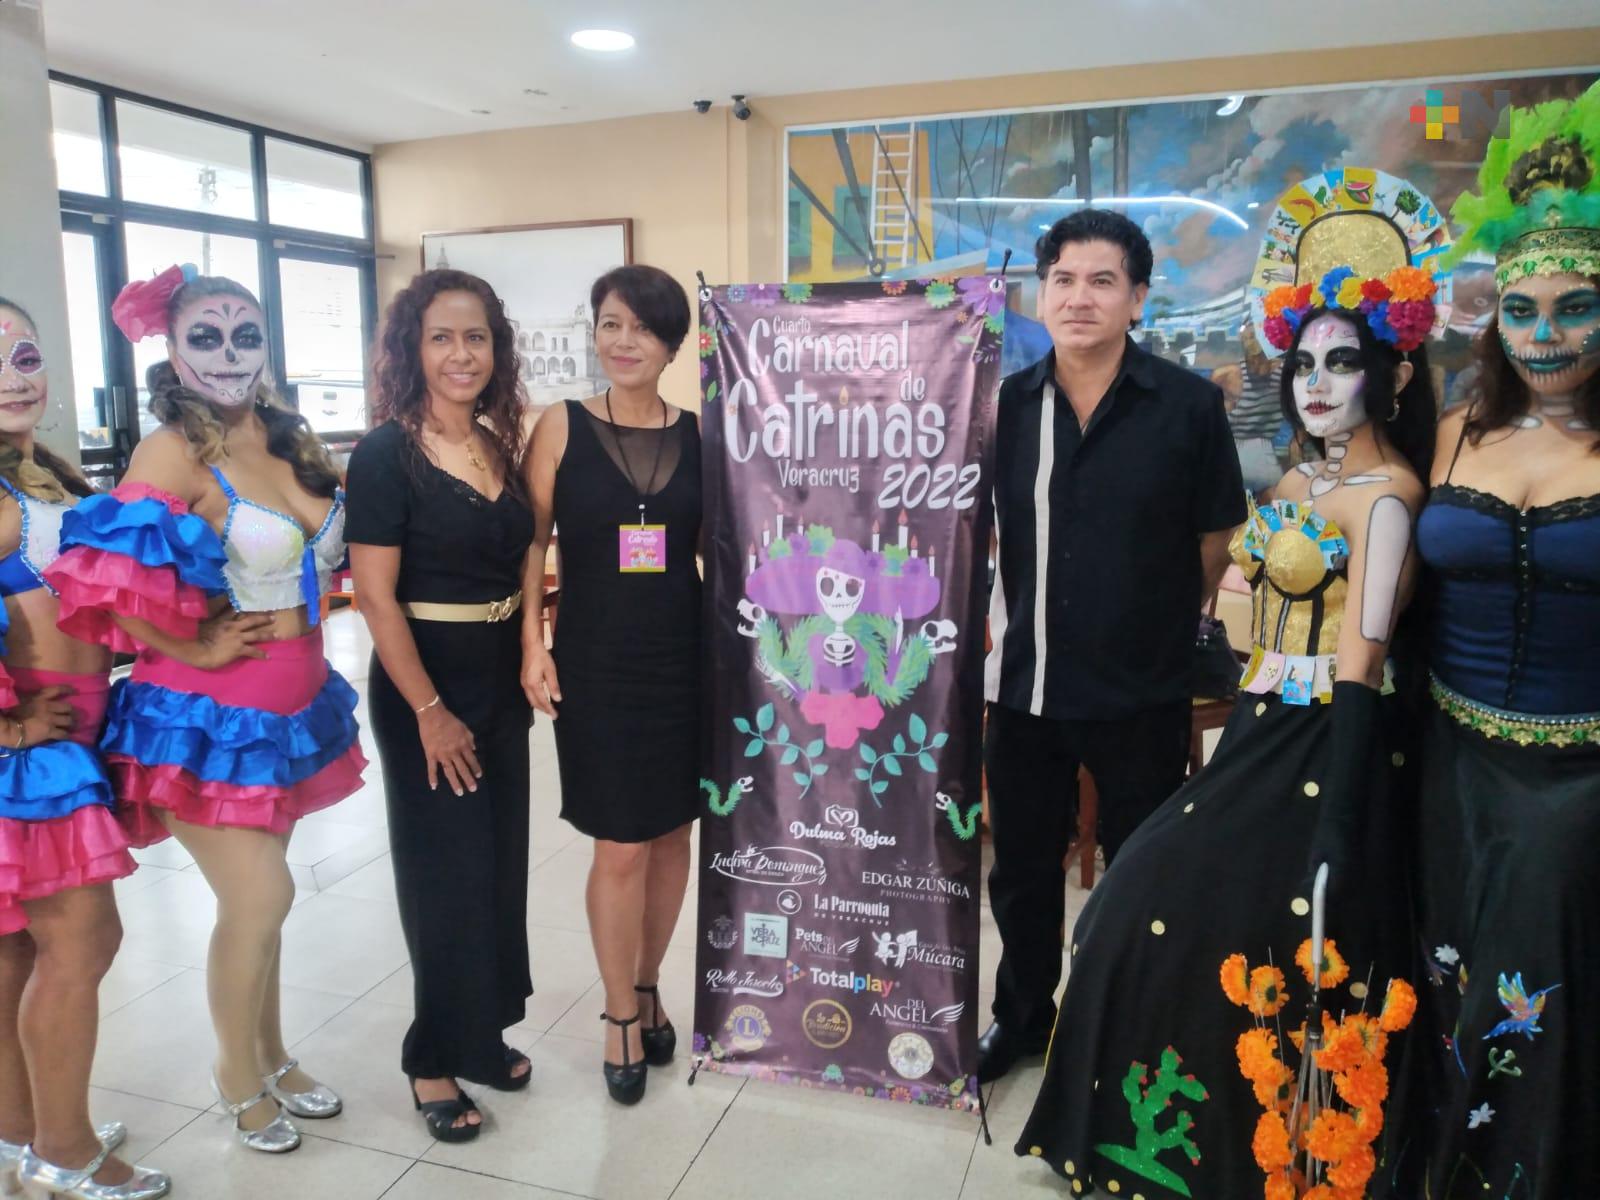 Carnaval de Catrinas 2022 se realizará en ciudad de Veracruz el fin de semana